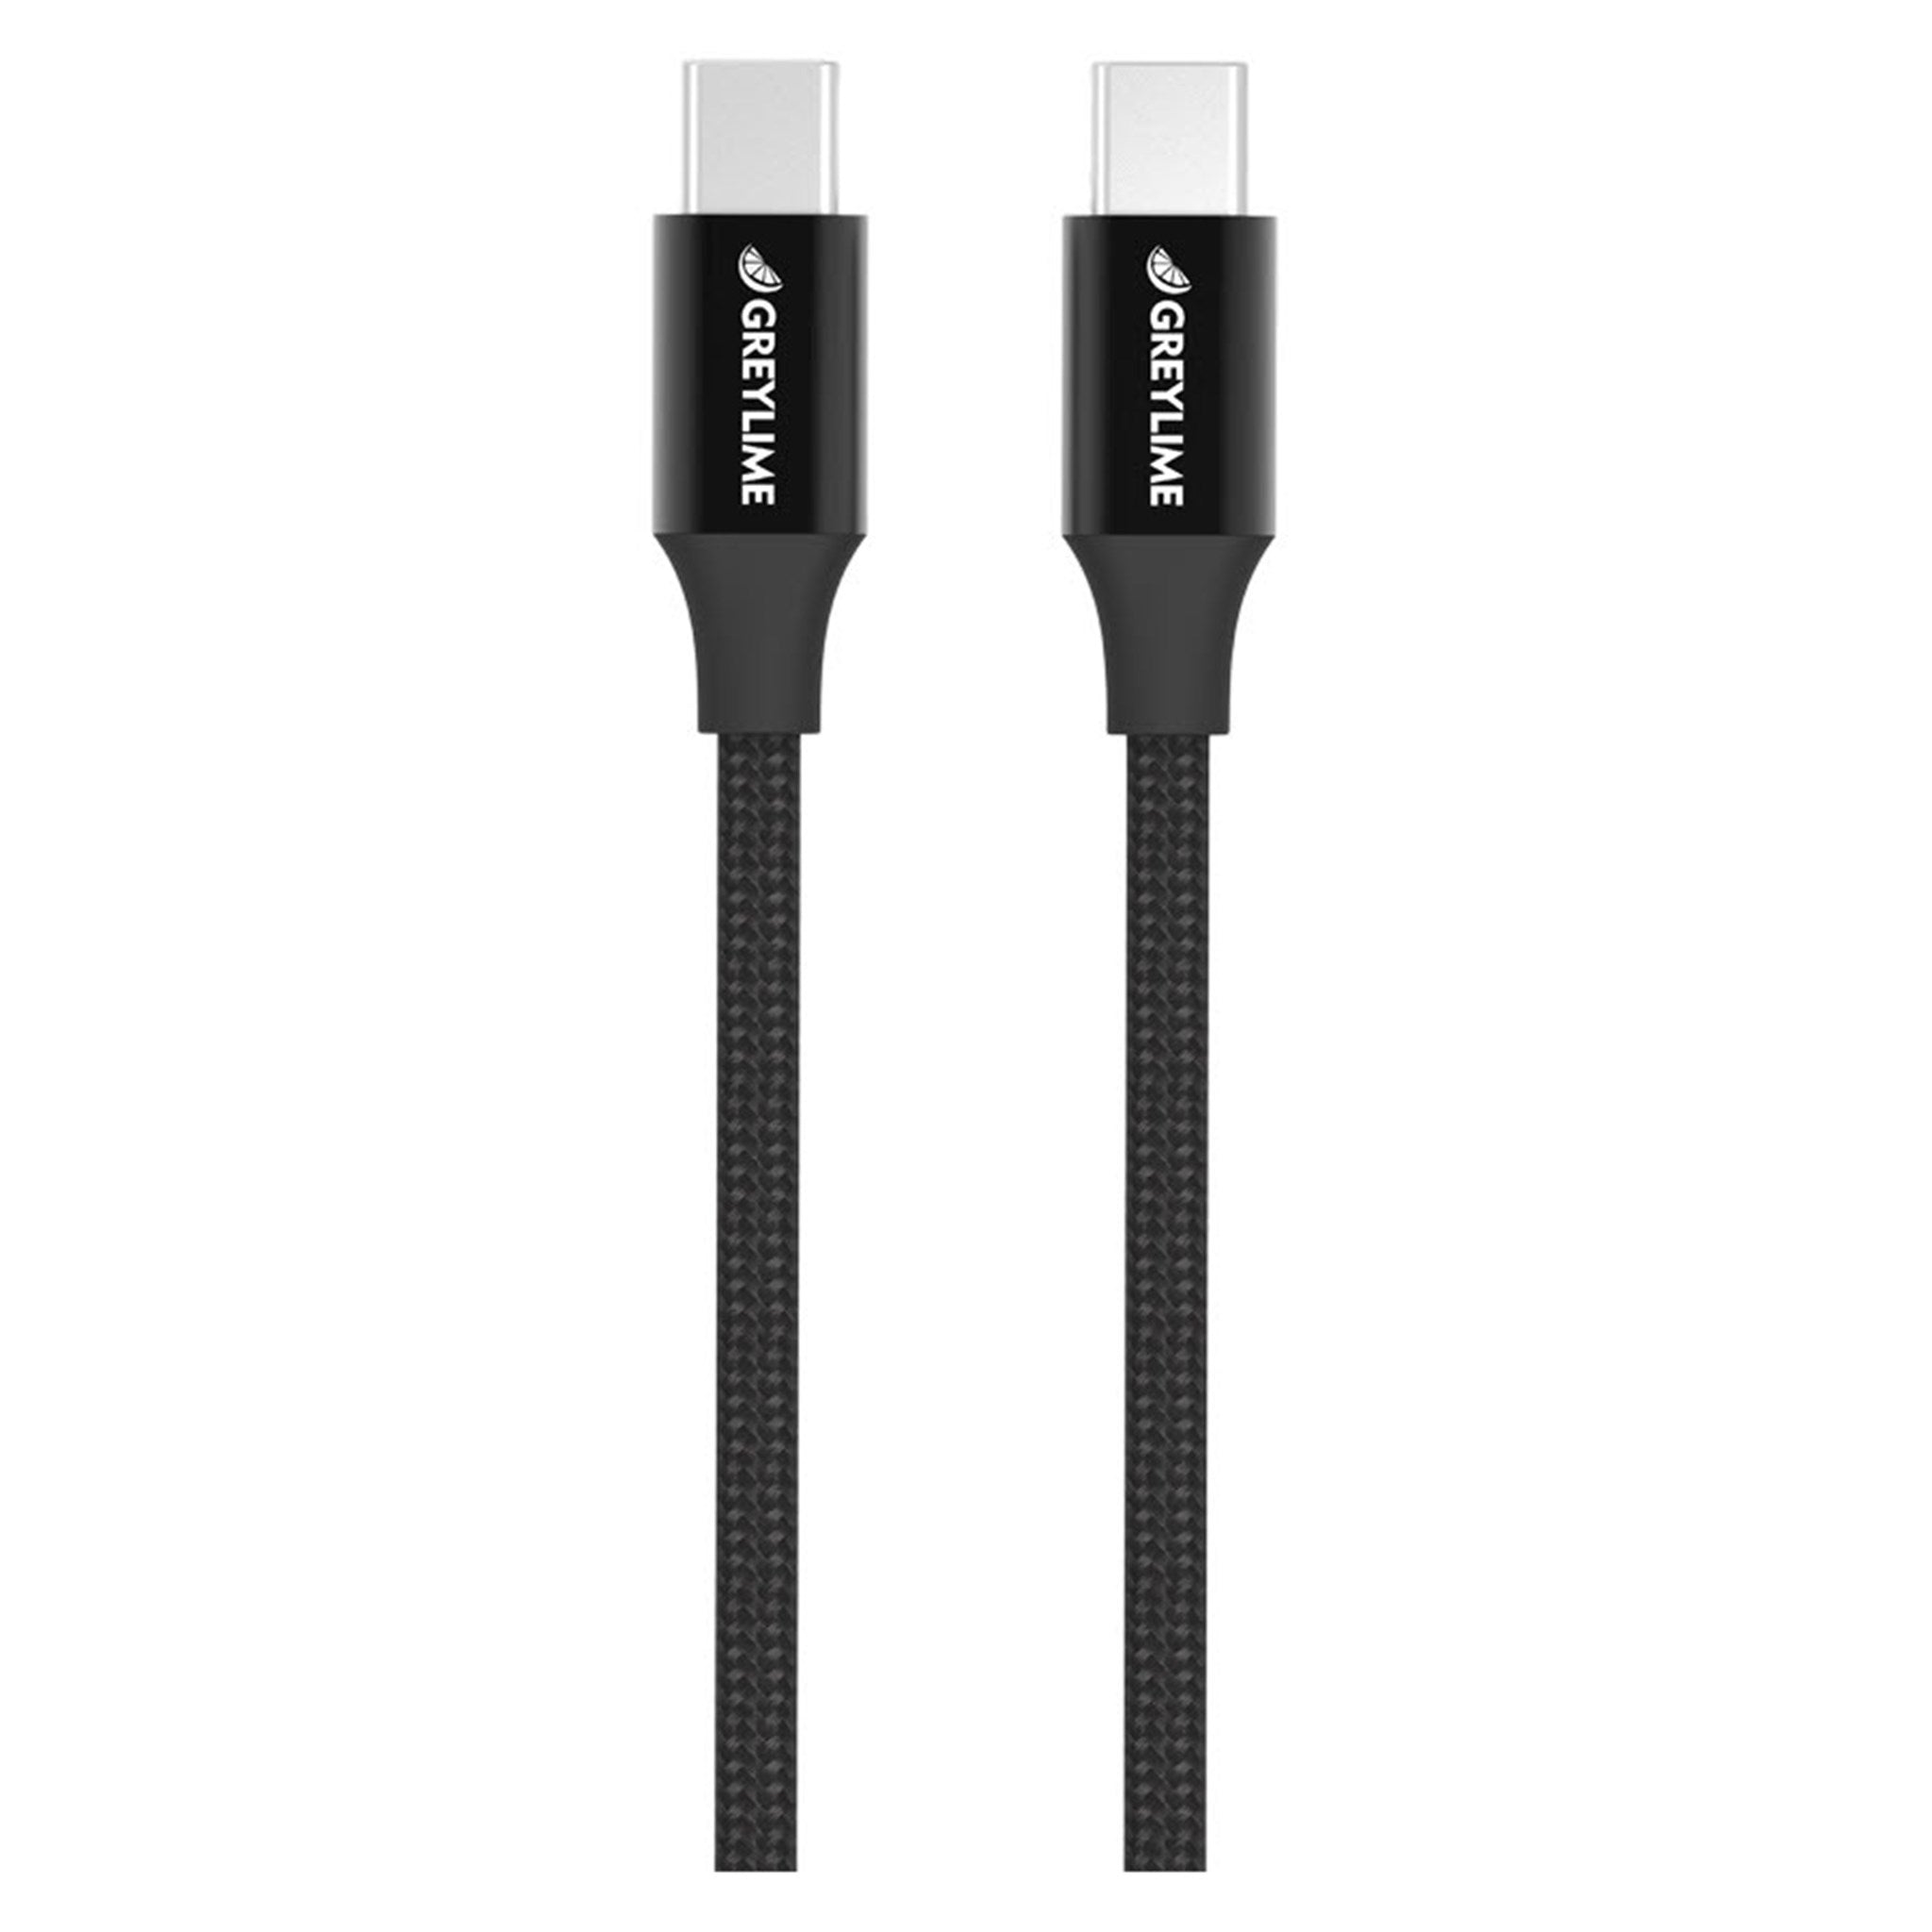 Billede af GreyLime Braided USB-C til USB-C 60W Kabel Sort 2 m hos GreyLime